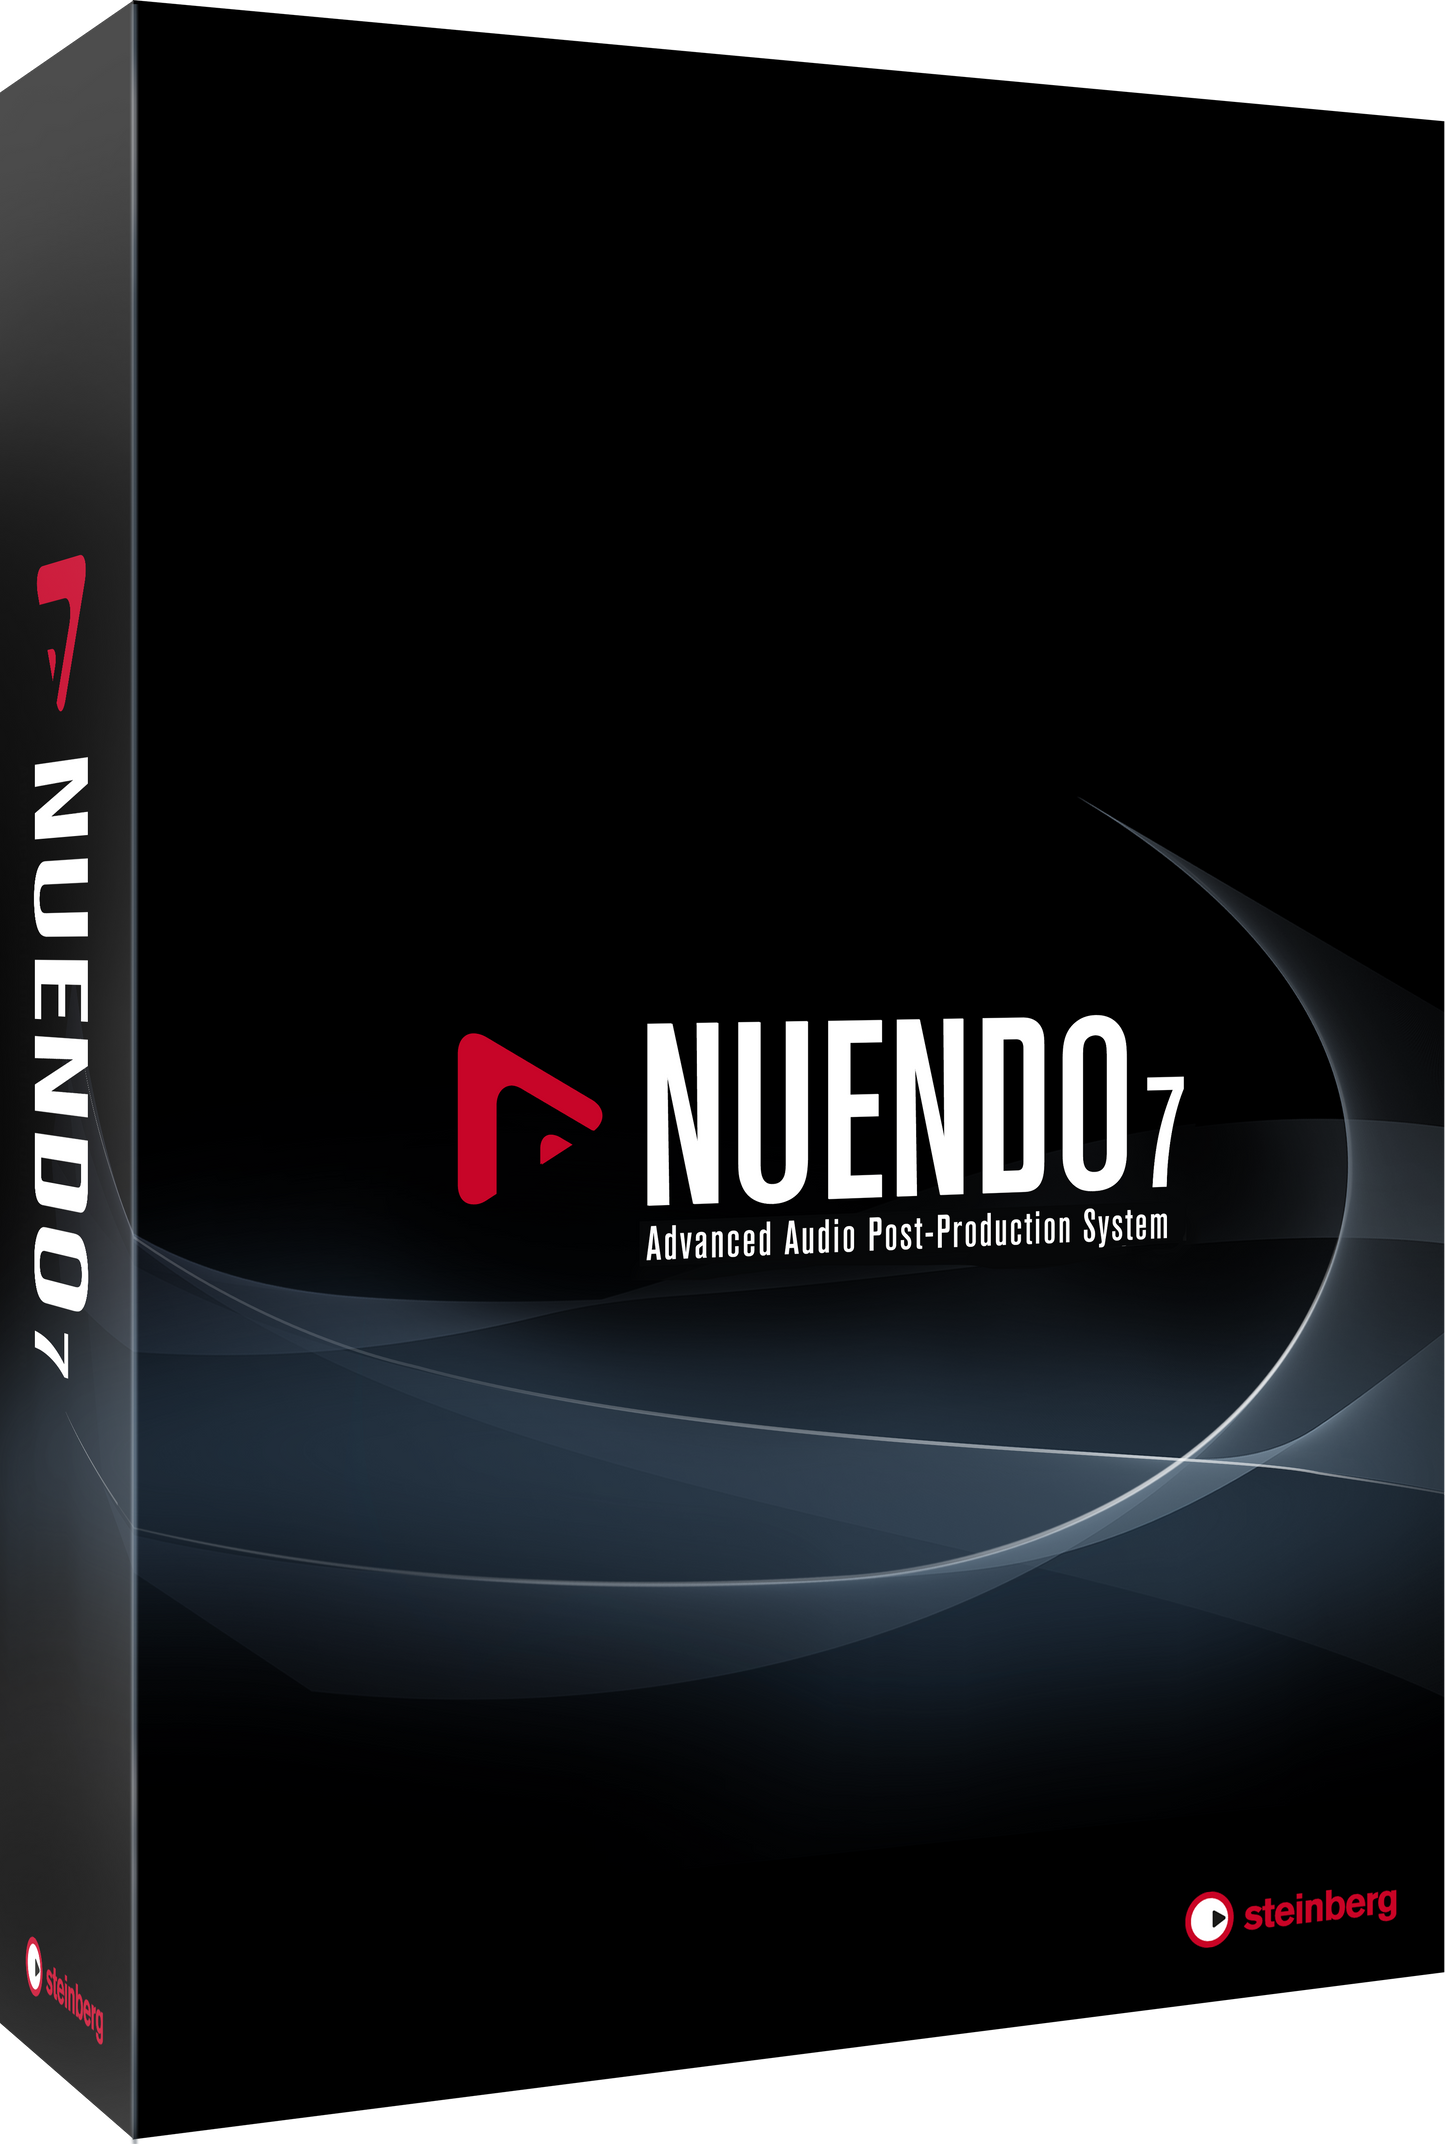 Steinberg Nuendo 7 Audio Software - Update from Version 6.5